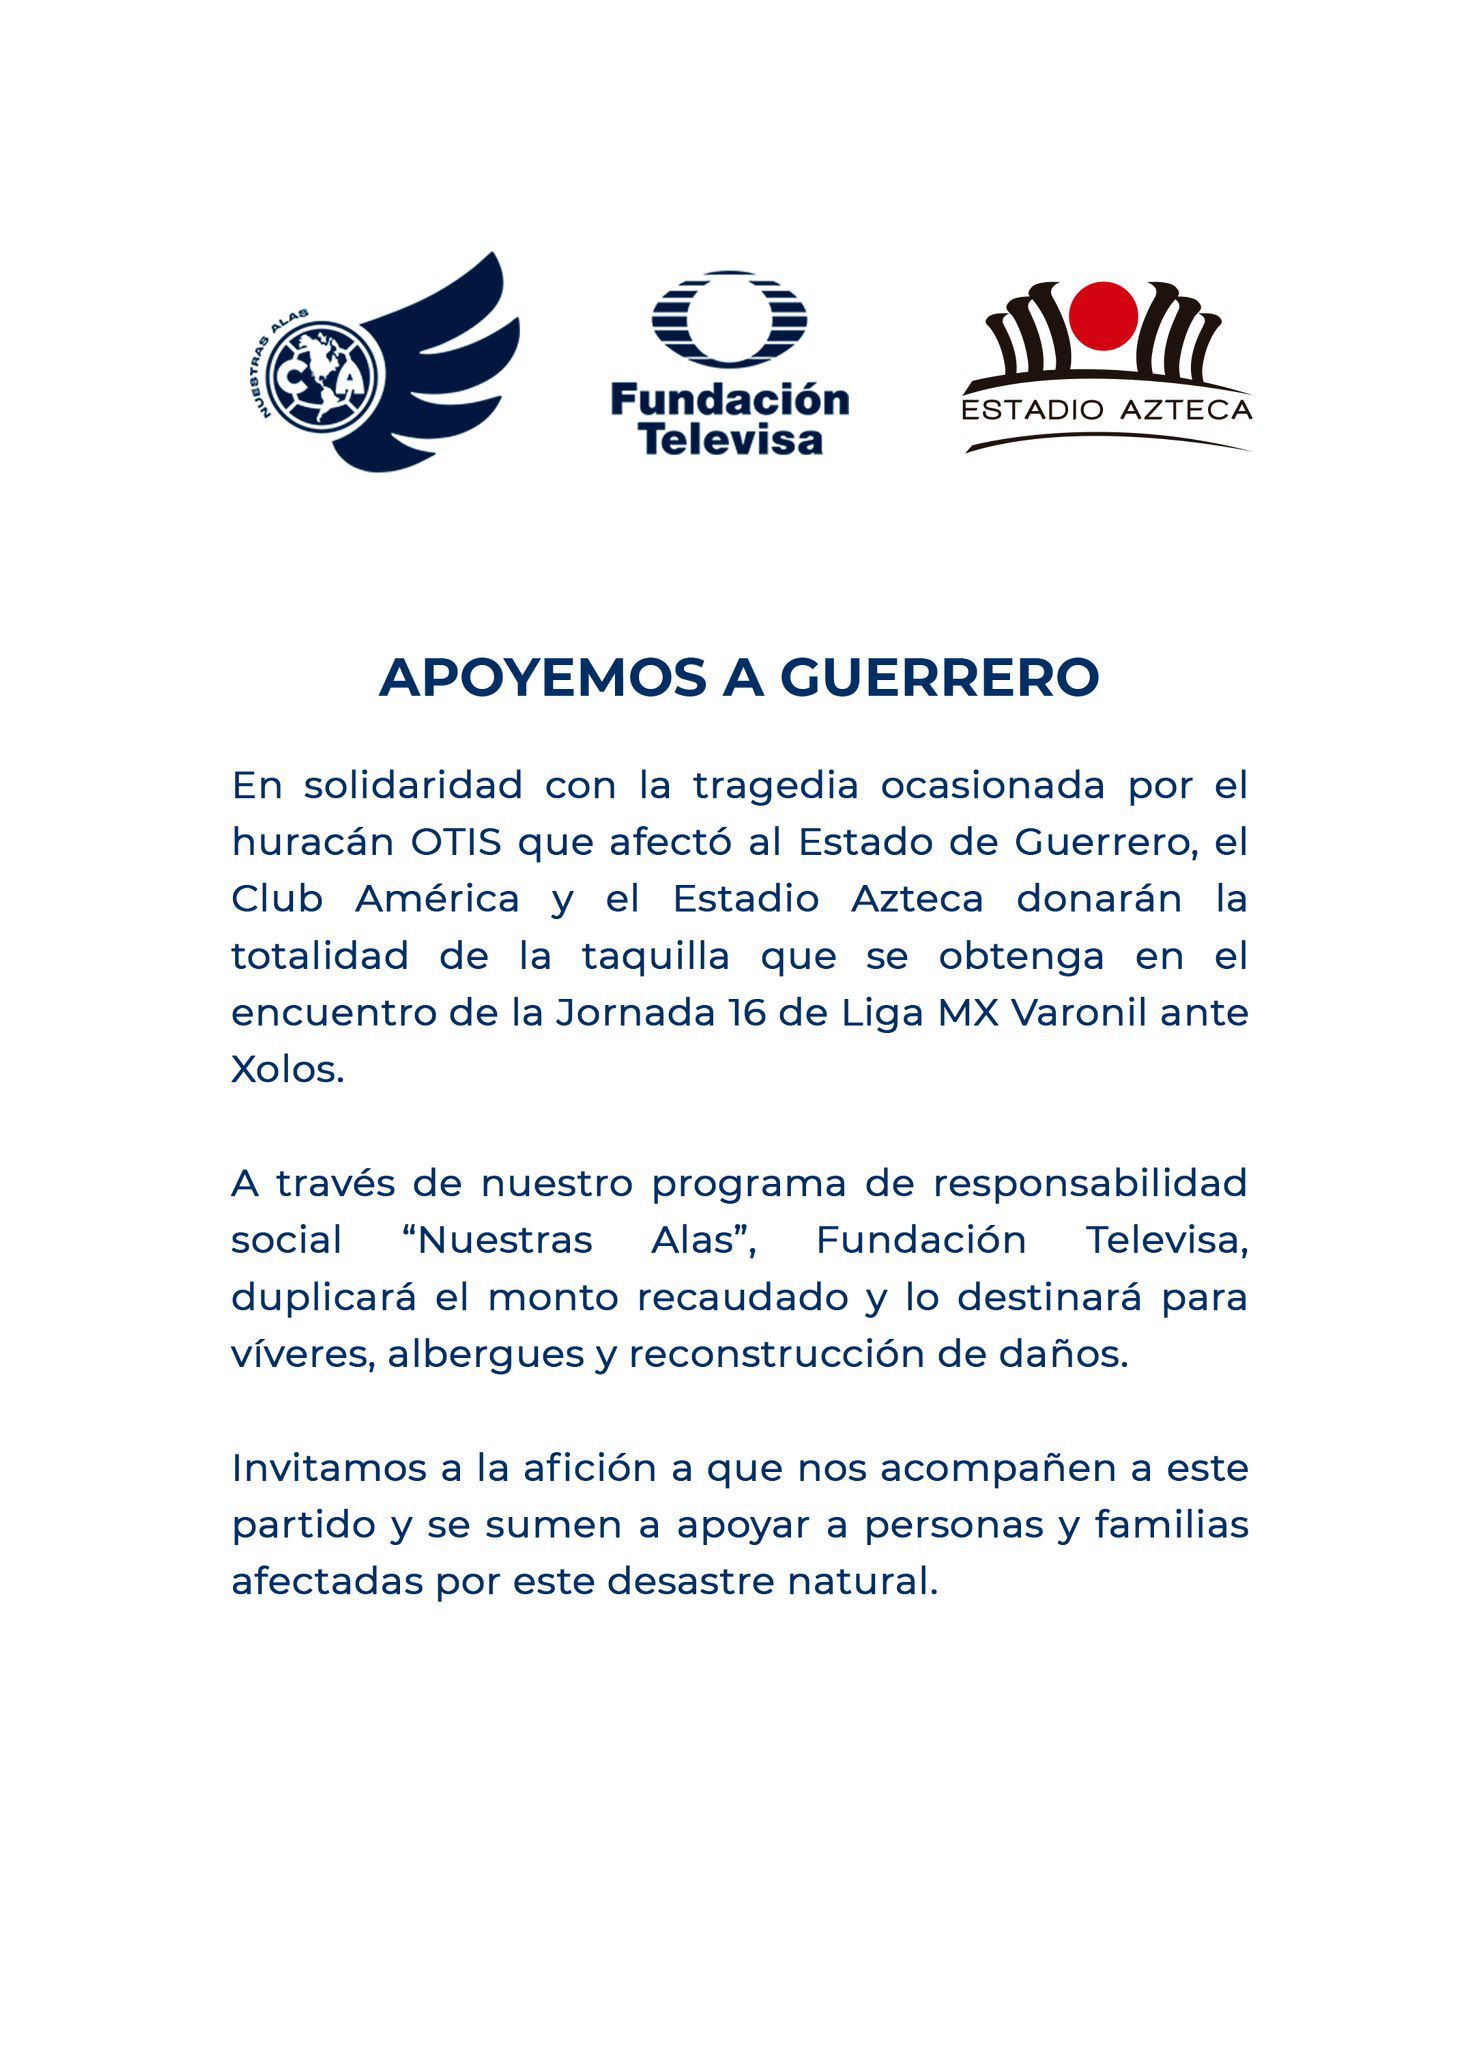 club América donará su taquilla a Guerrero por huracán Otis